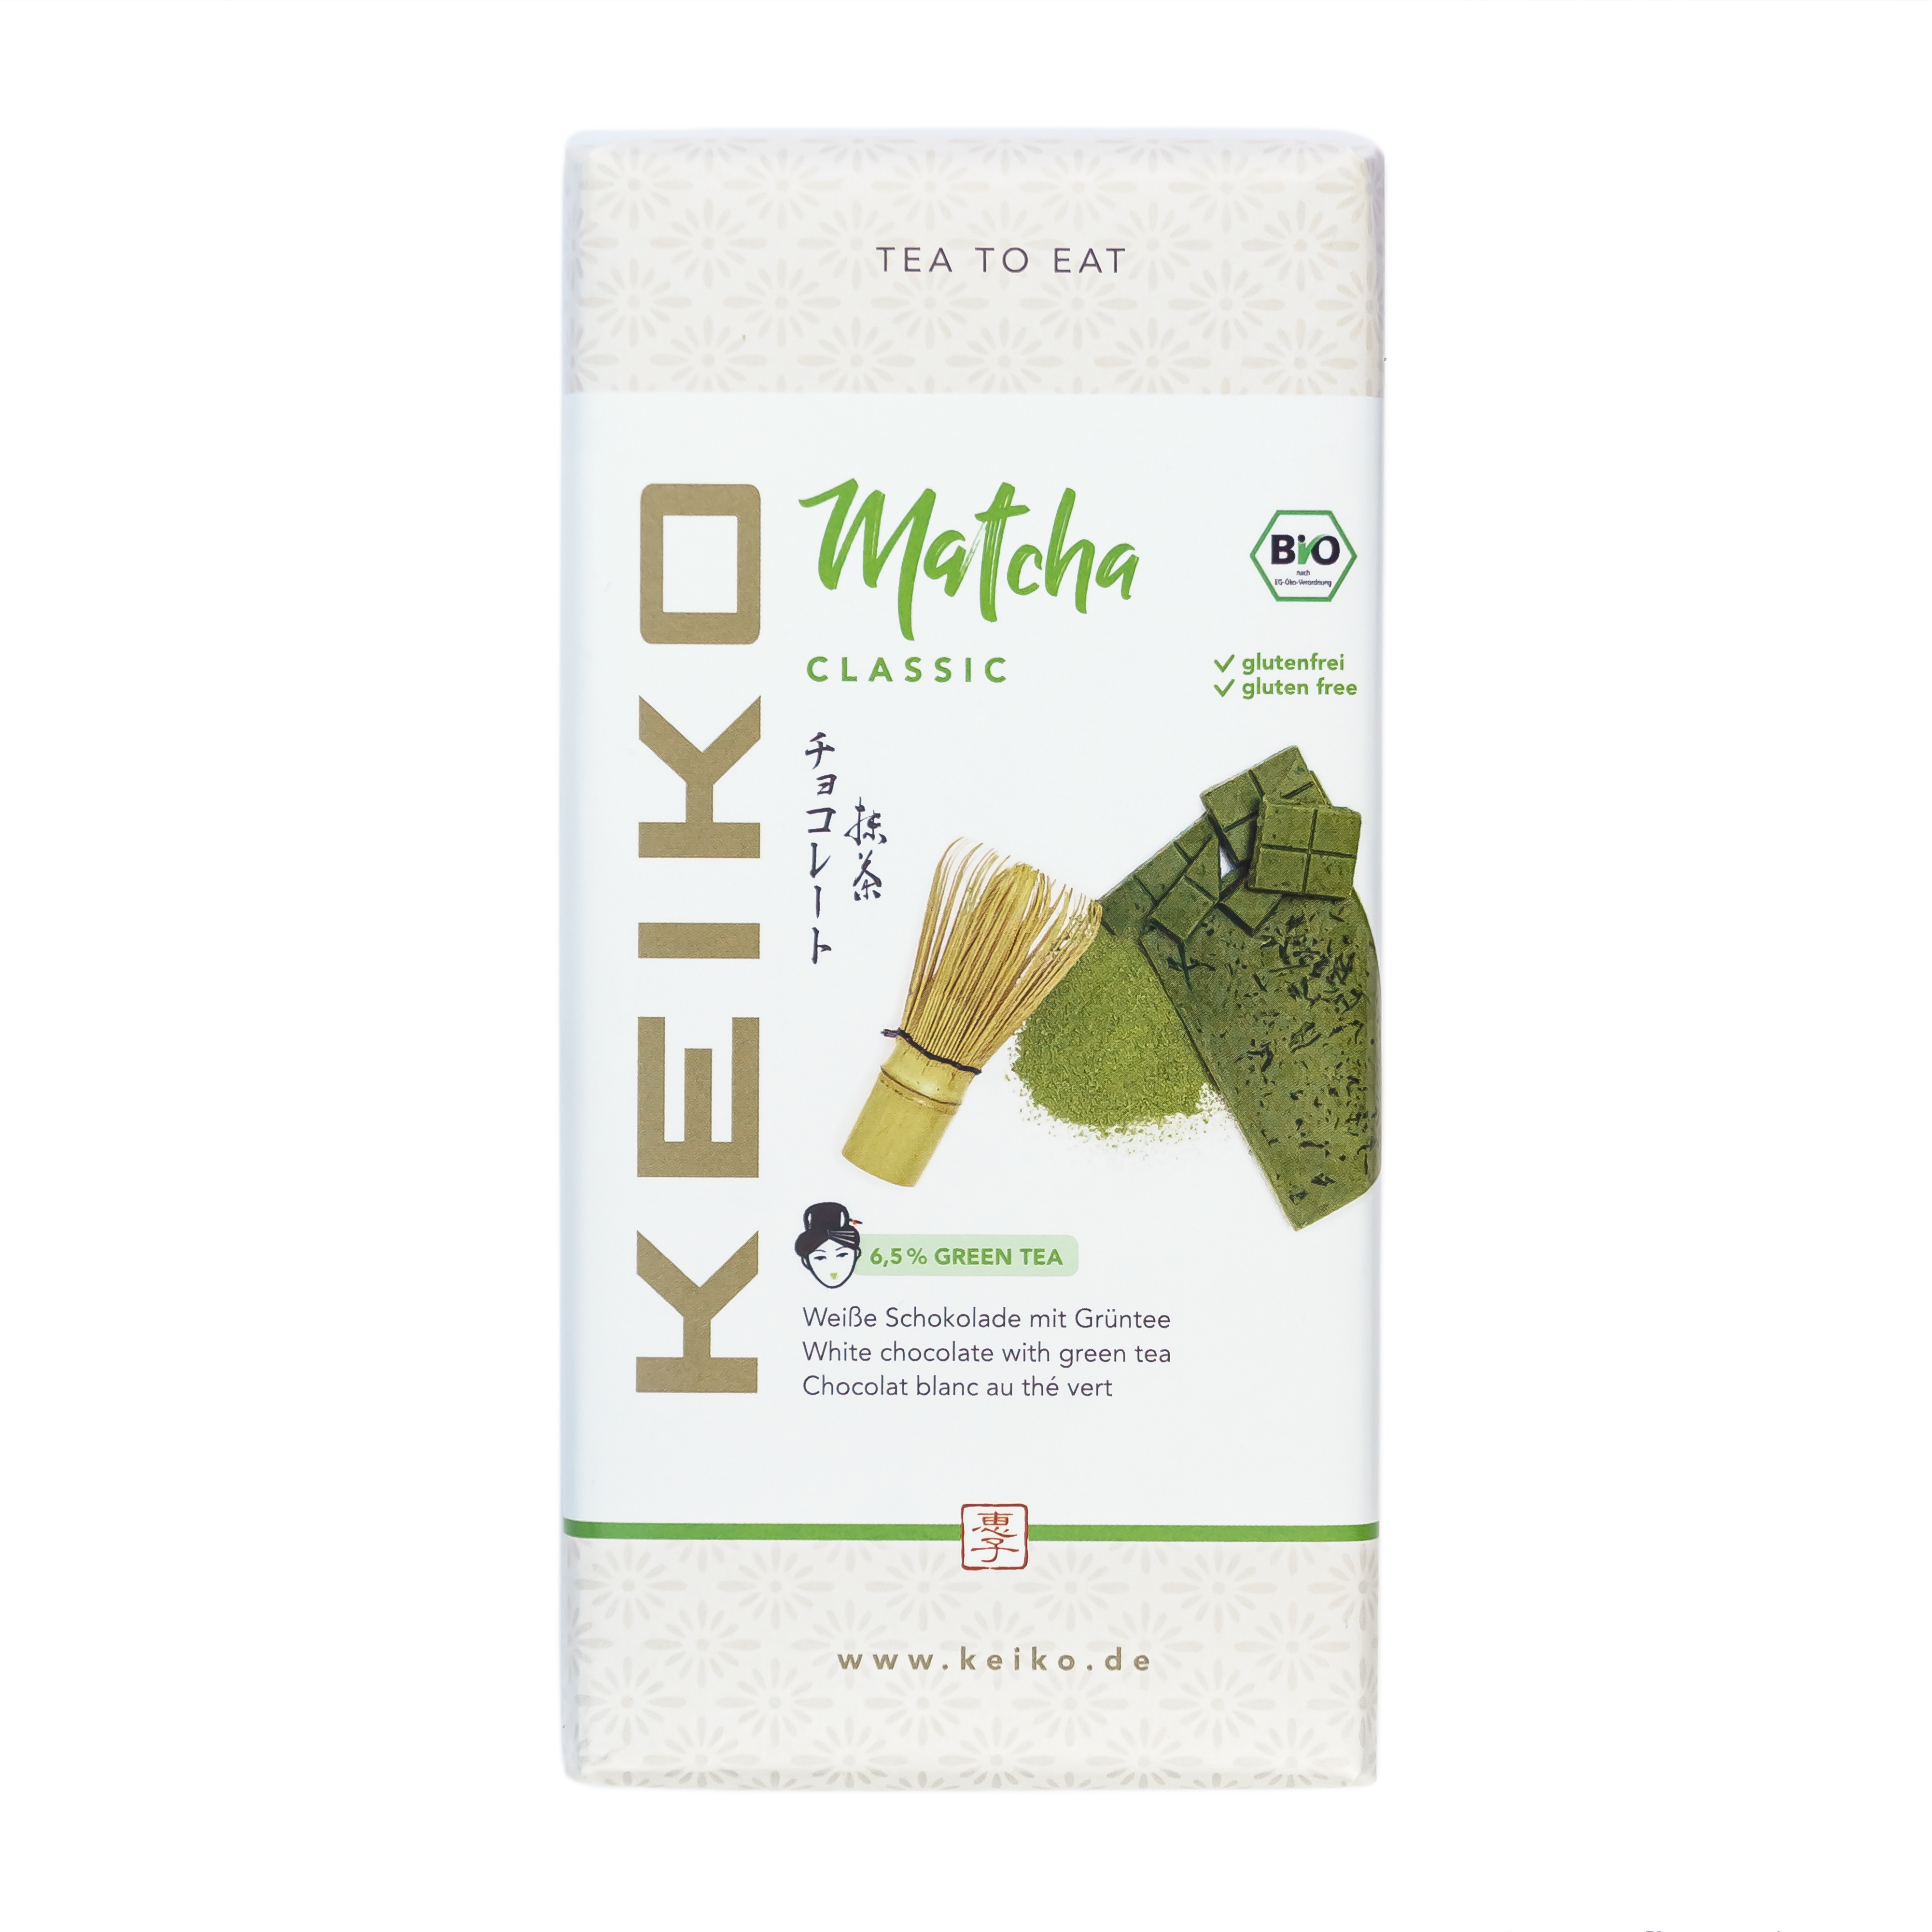 KEIKO Matcha Classic White Chocolate with Green Tea, 30g, organic